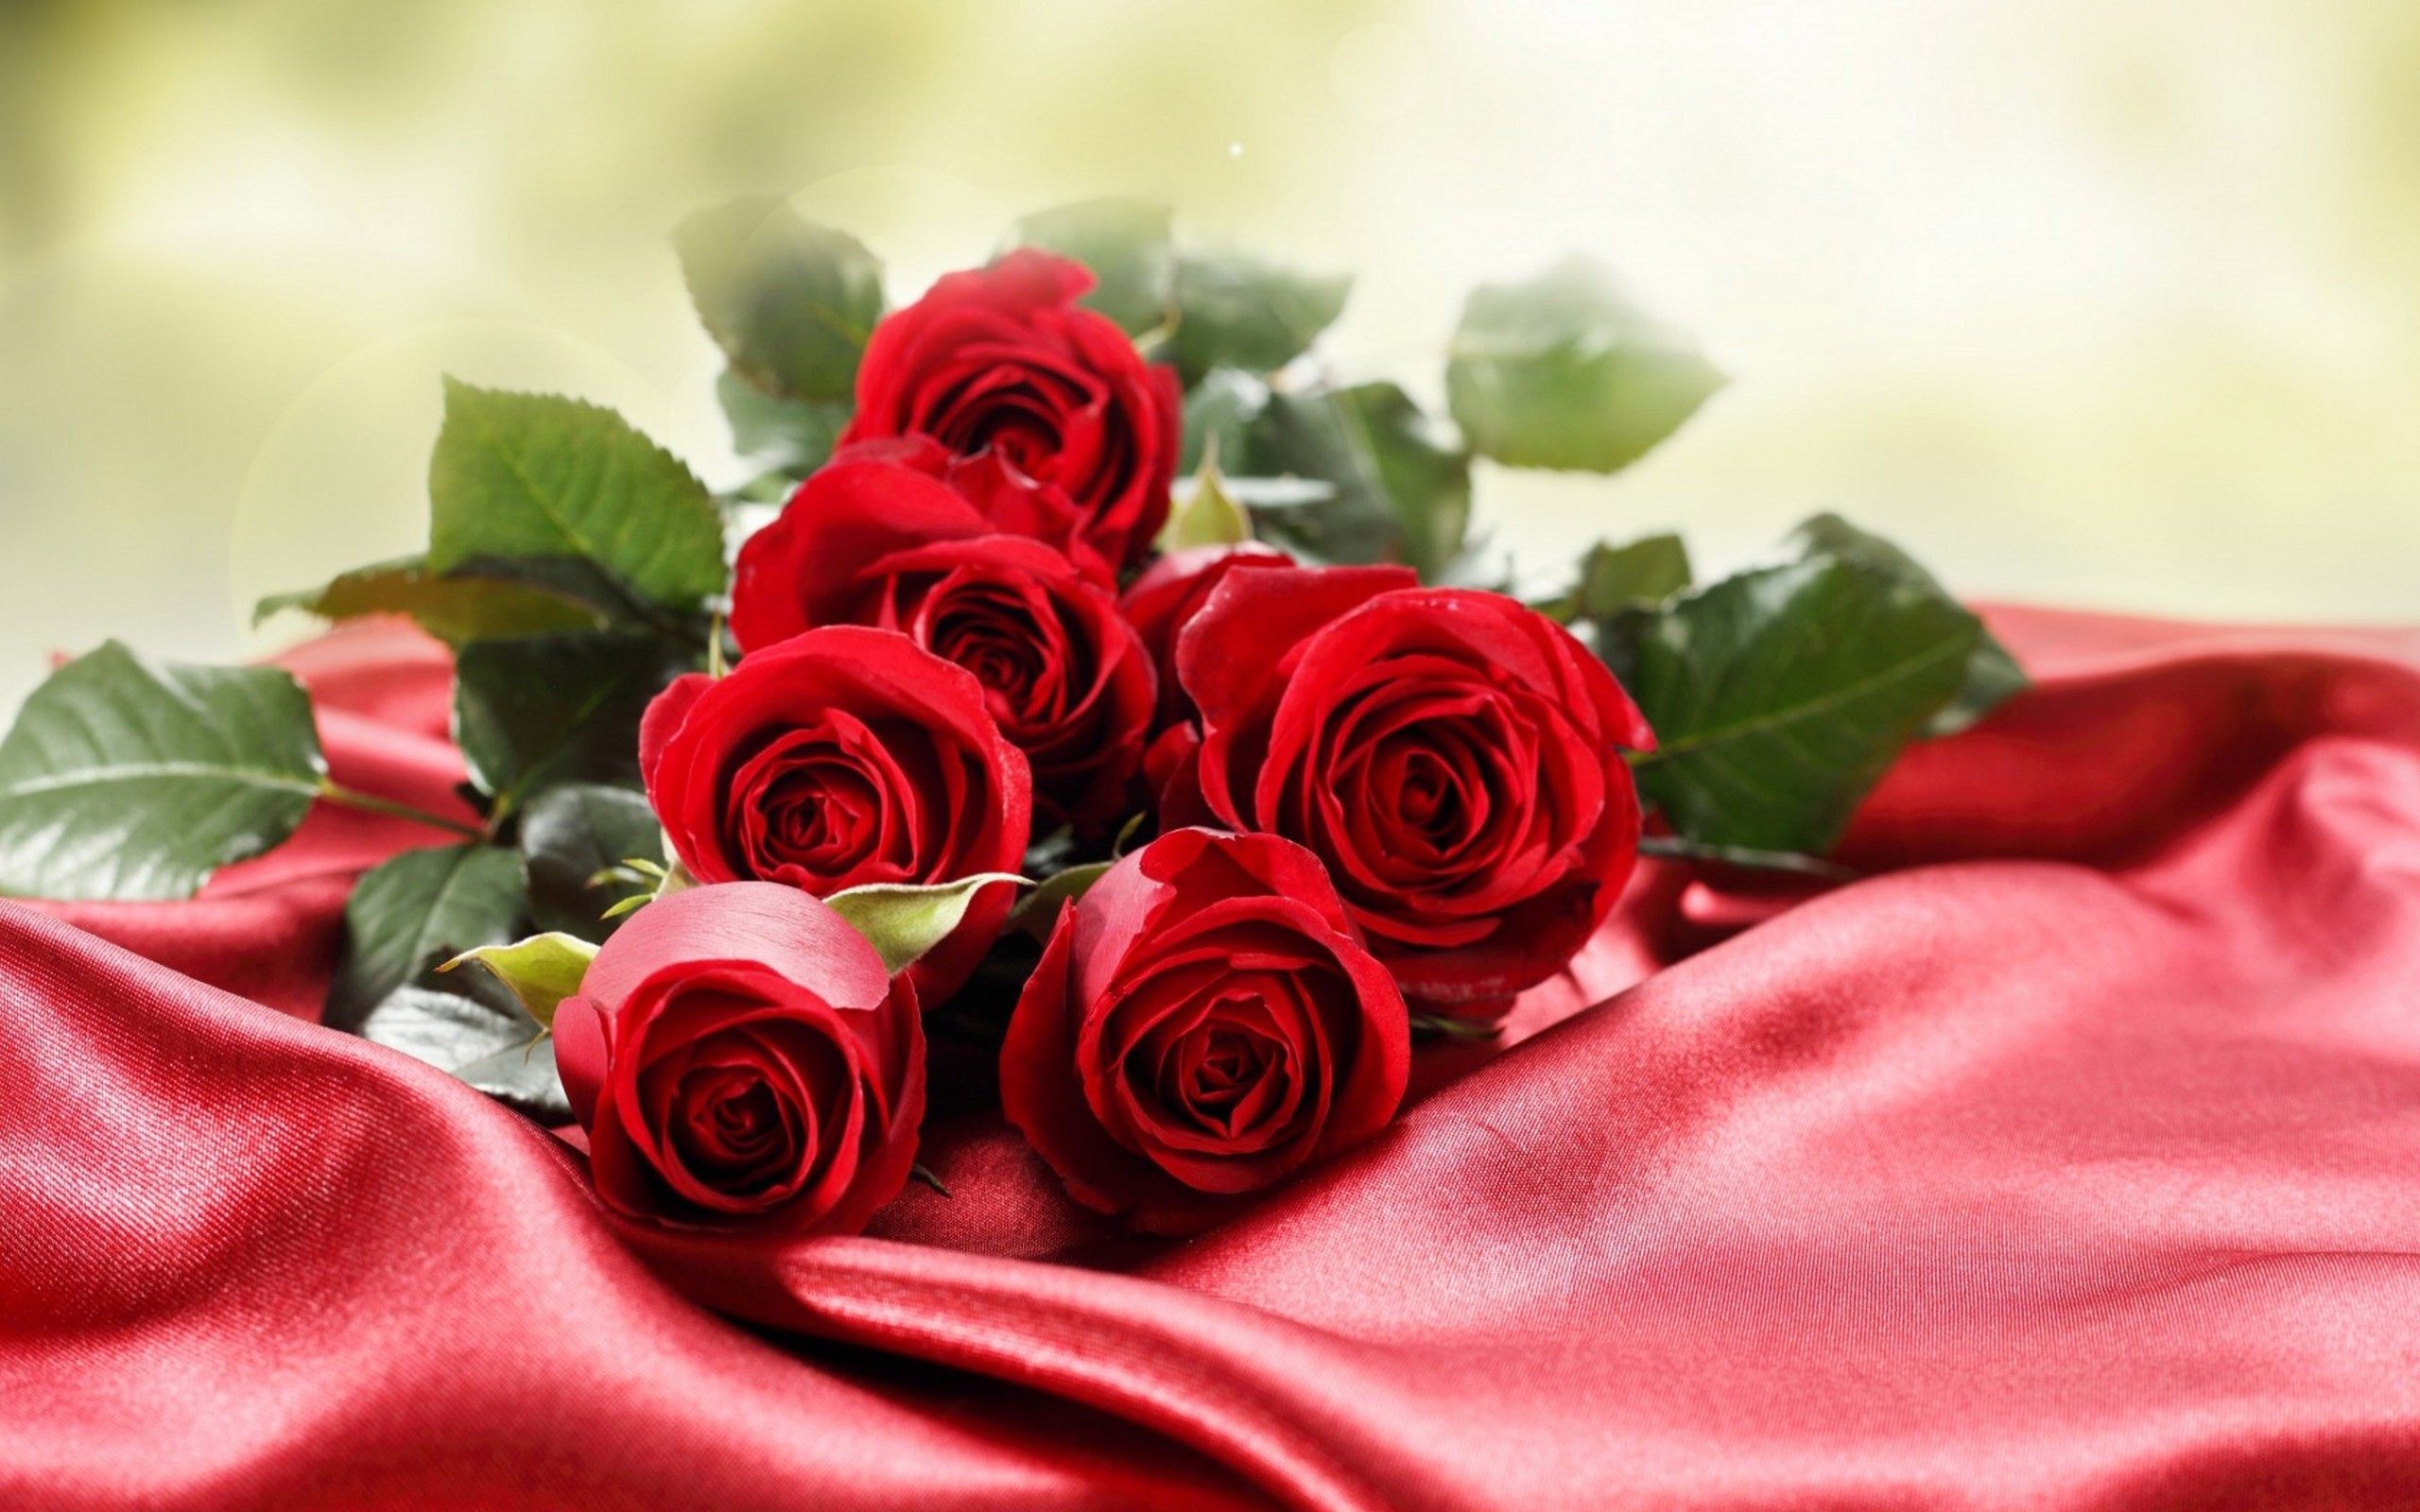 schöne bilder von rosen als tapete,blume,gartenrosen,rot,rose,rosenfamilie